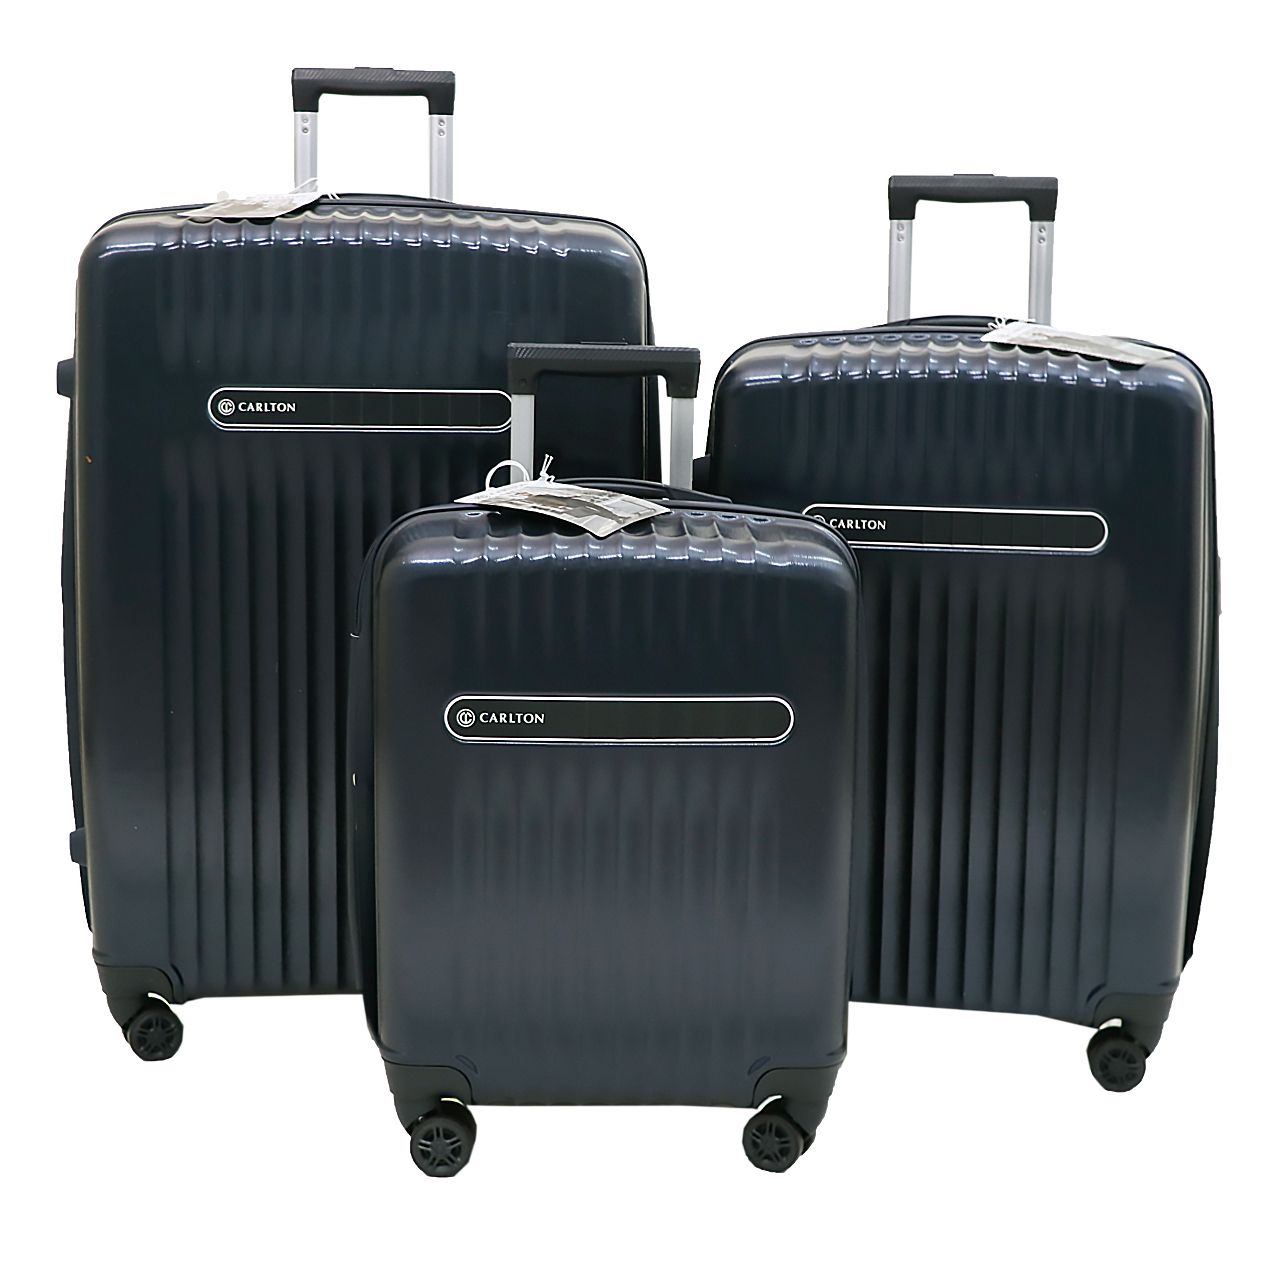 مجموعه سه عددی چمدان کارلتون مدل MERIDIAN مردیان -  - 3